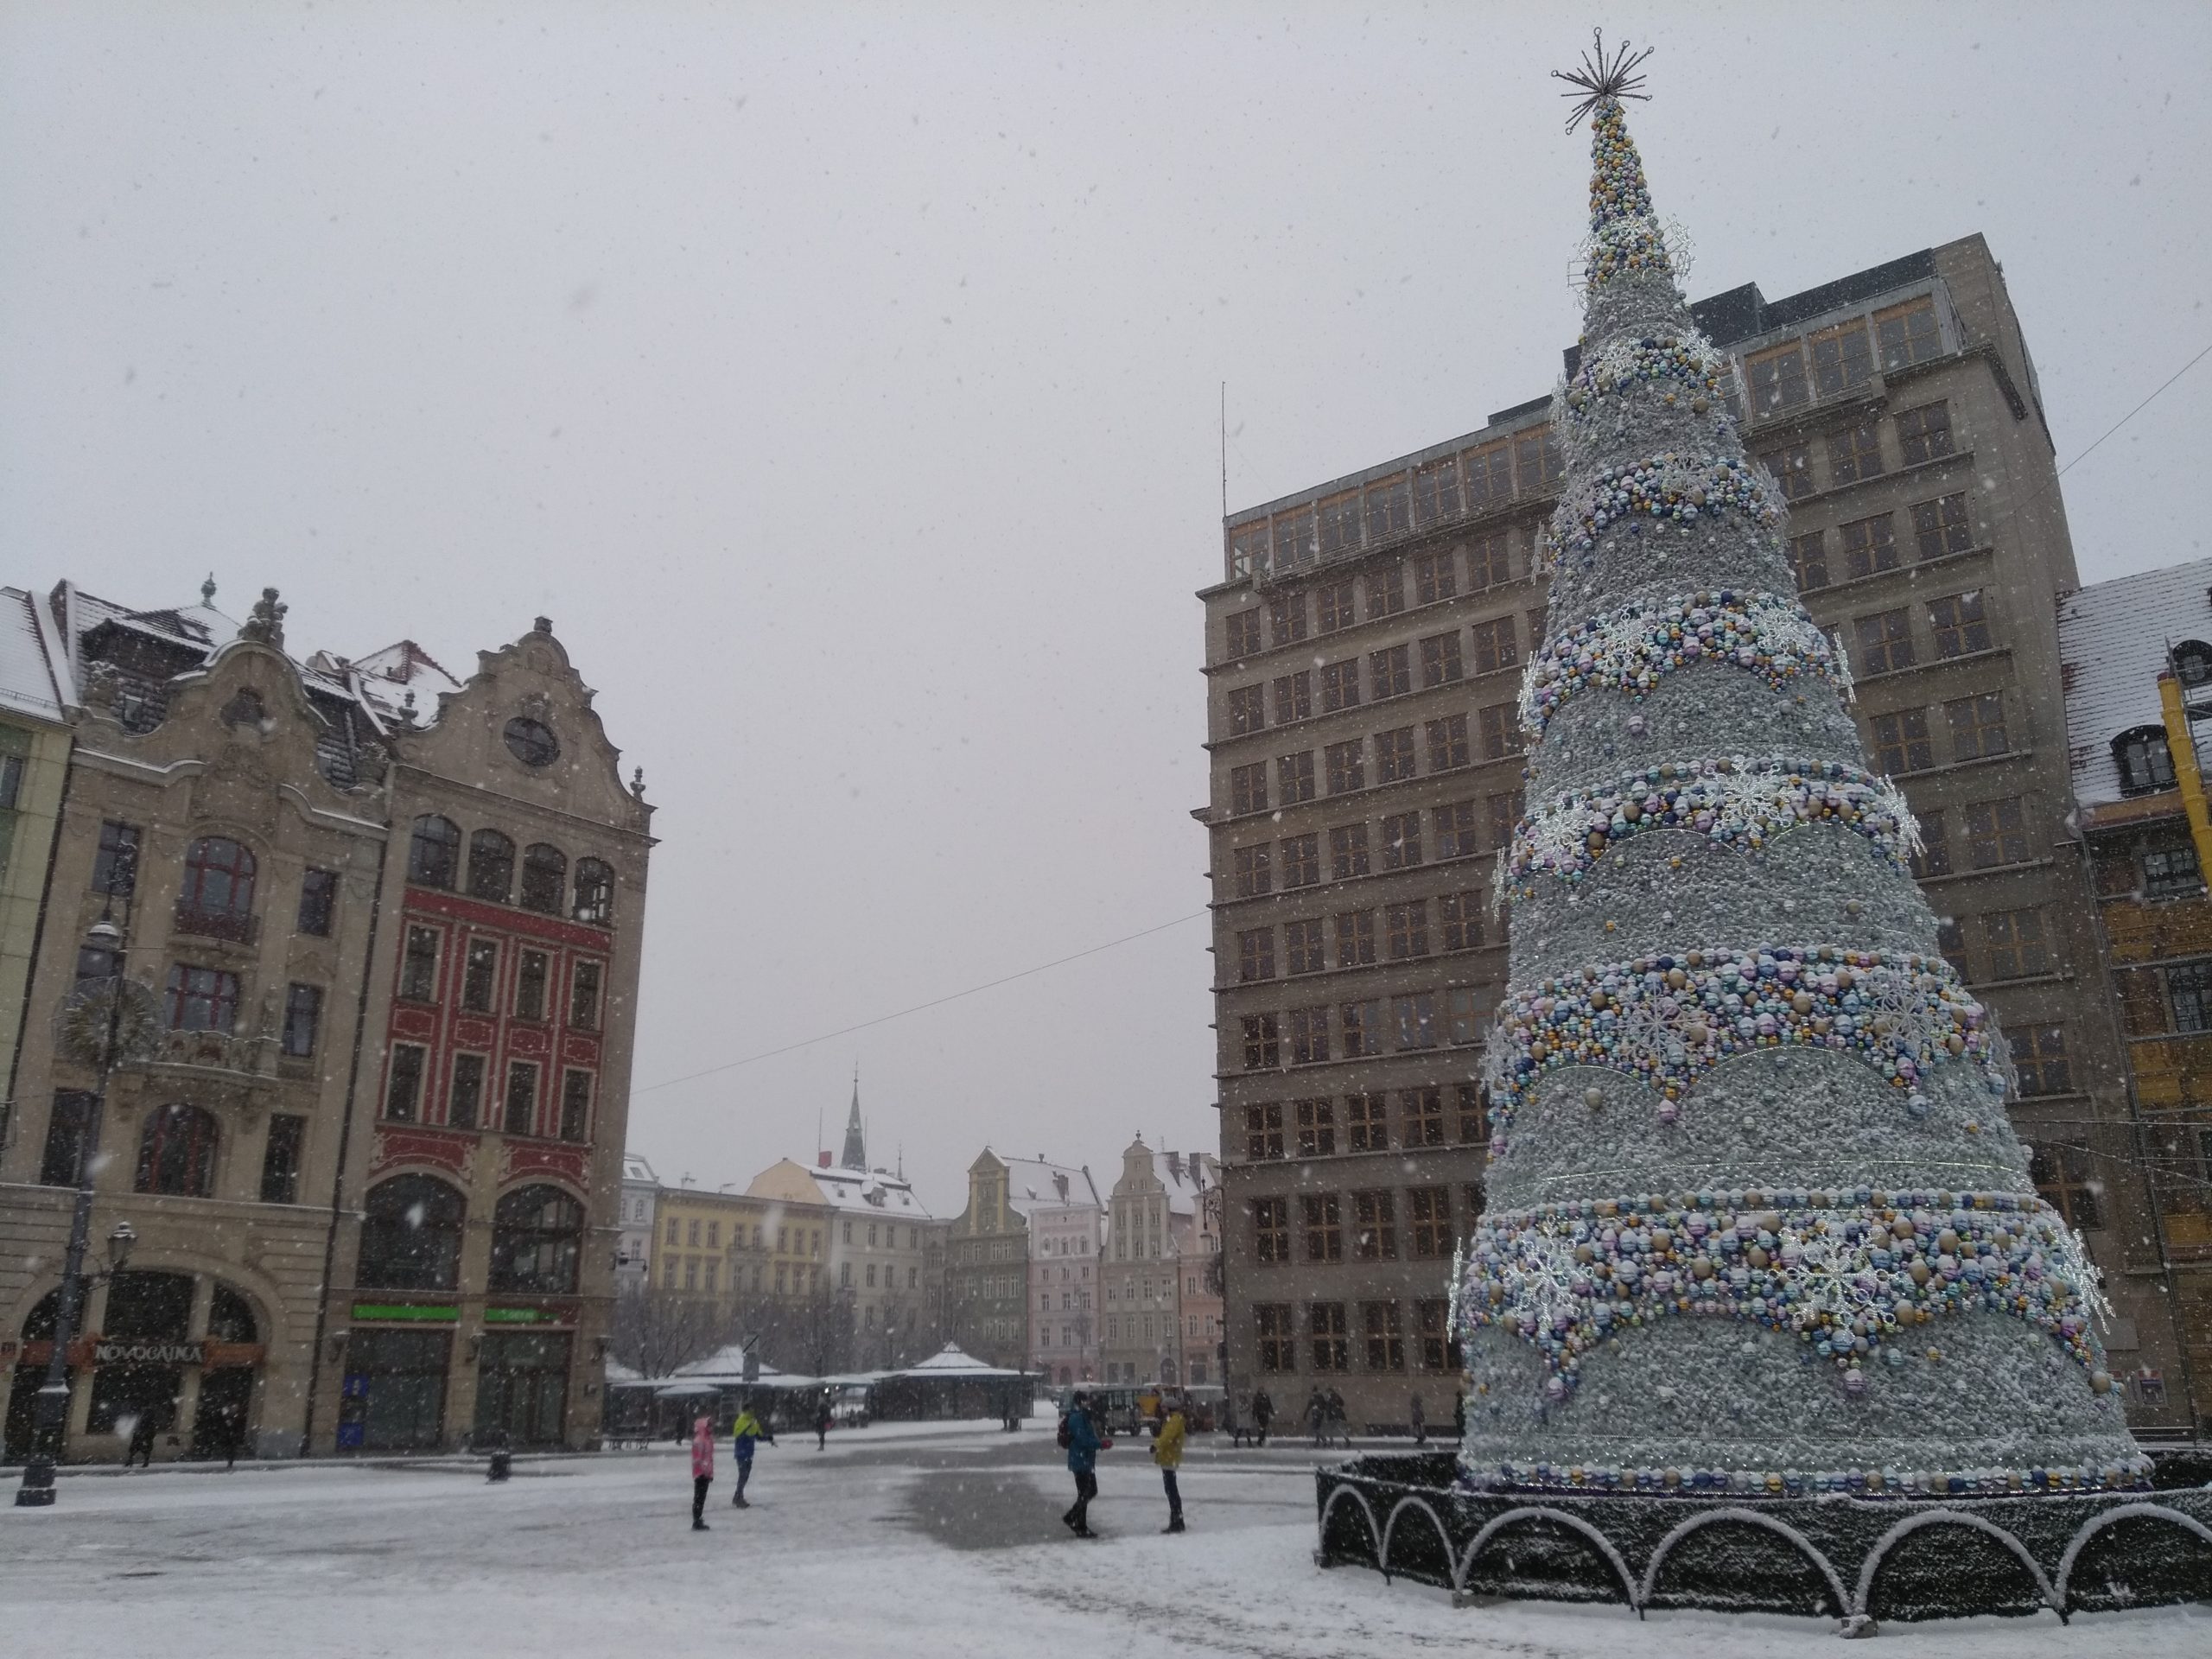 Foto: Rynek in Breslau zur Weihnachtszeit